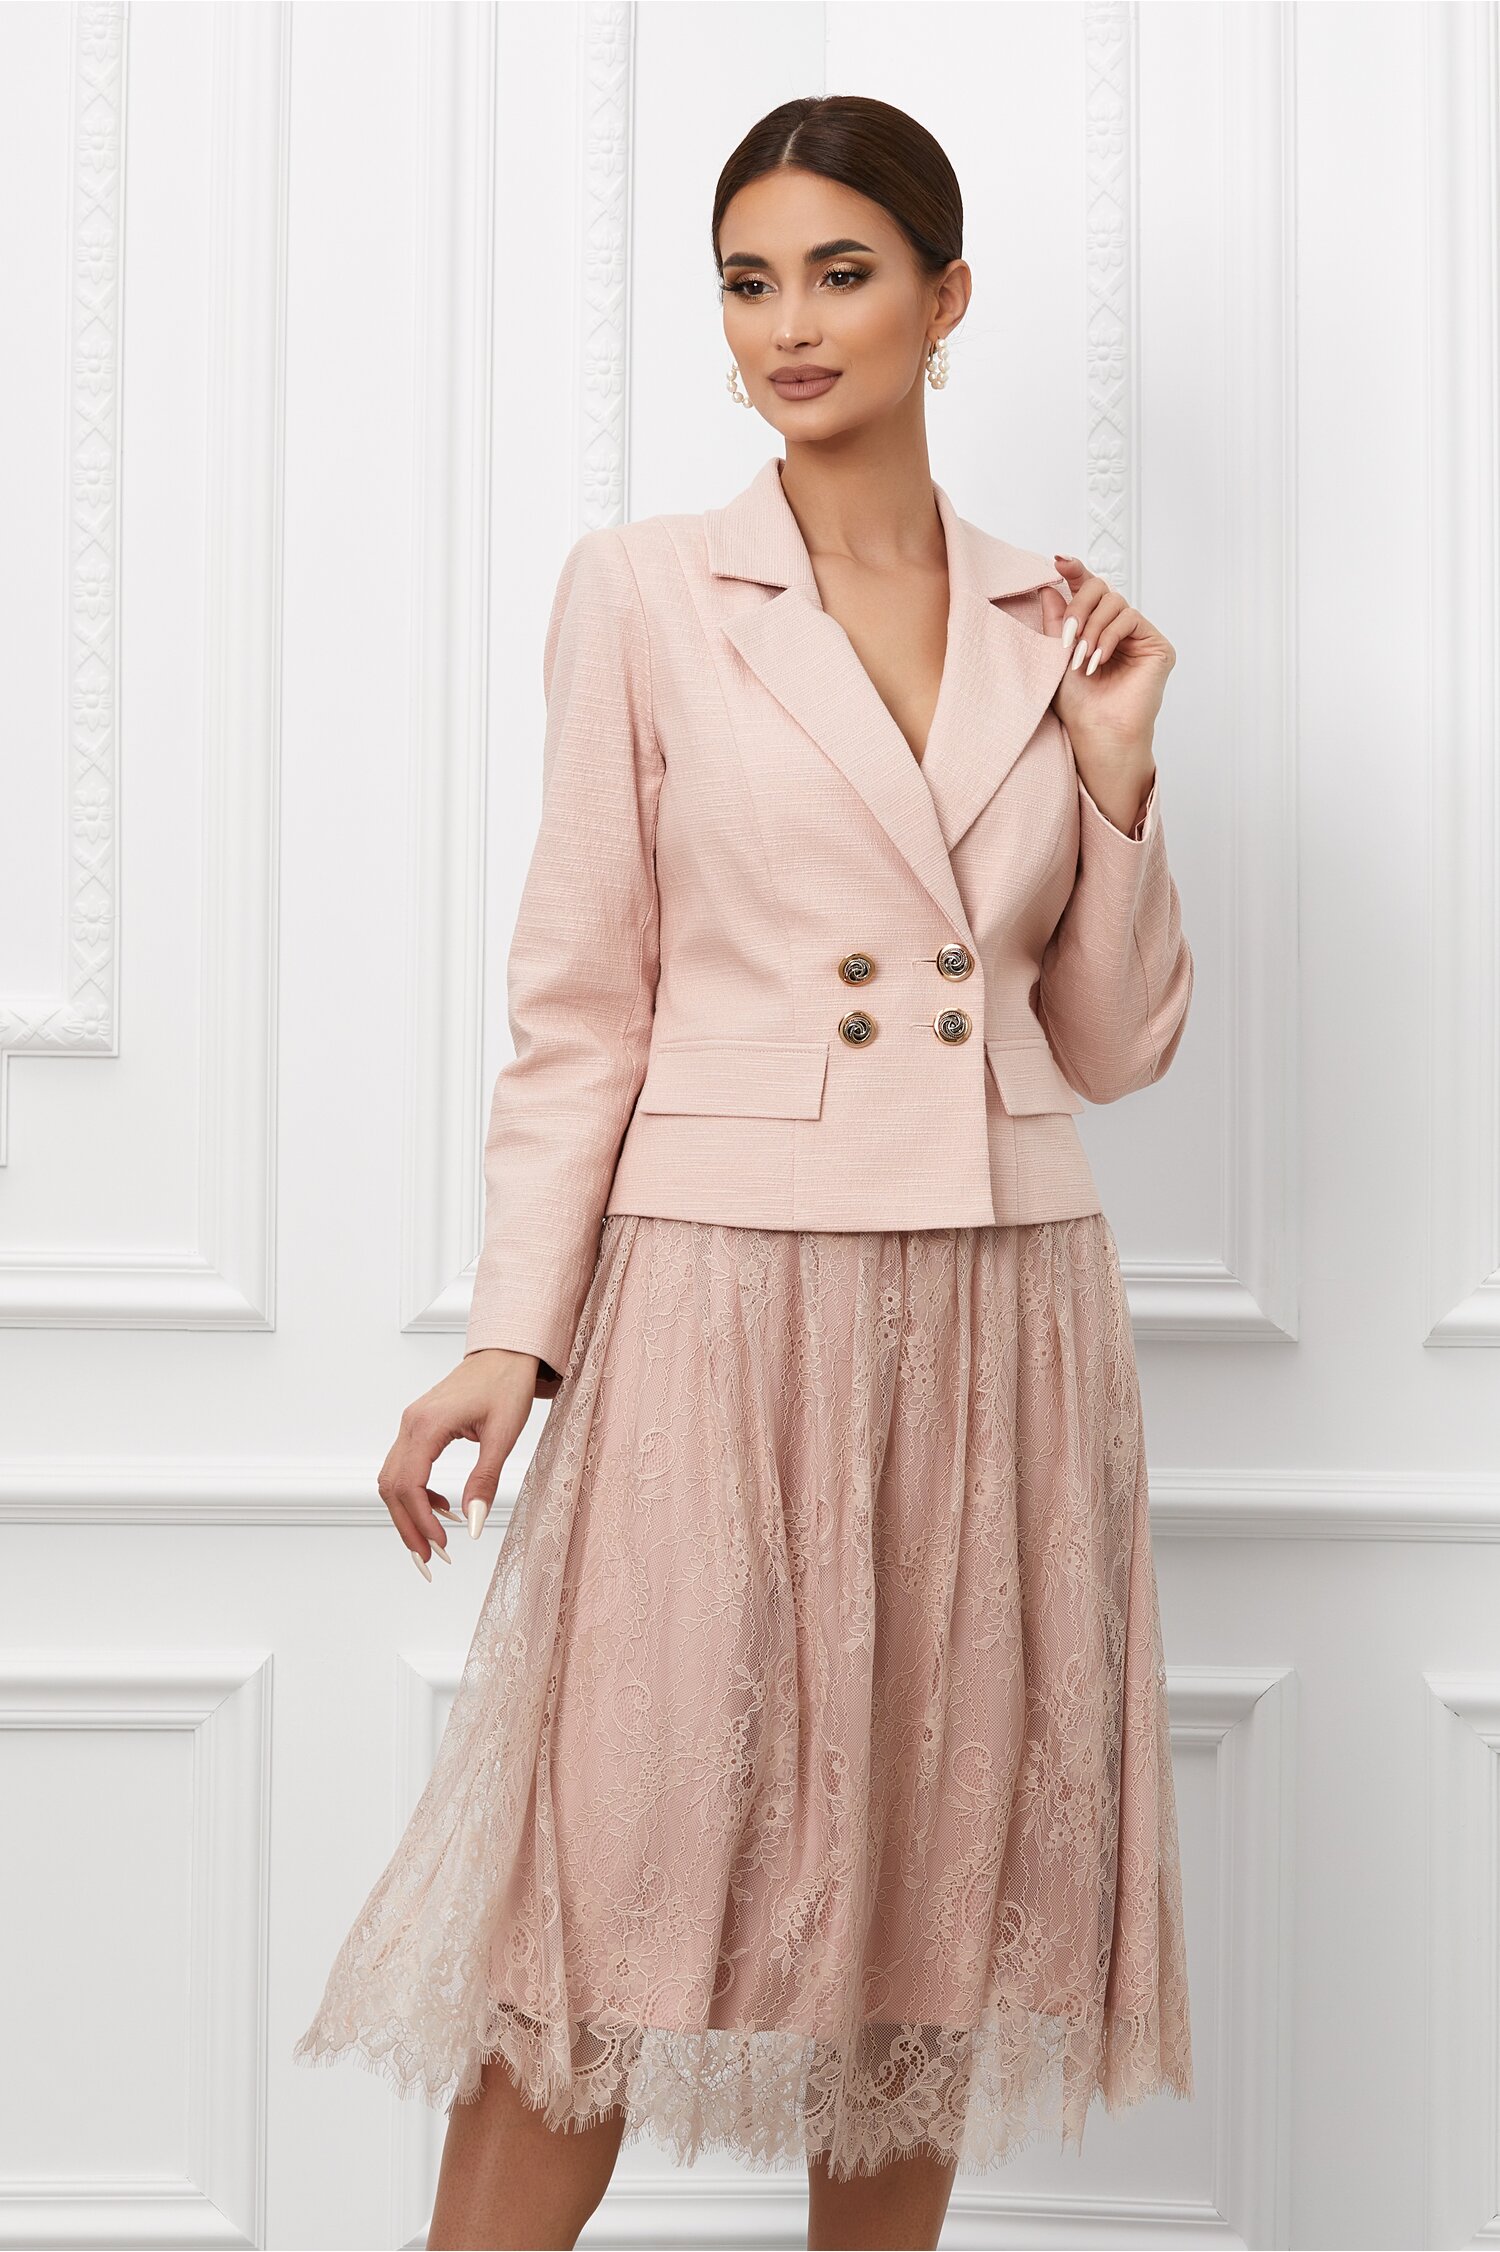 Compleu Ginette roz cu fusta din dantela 2022 ❤️ Pret Super dyfashion imagine noua 2022